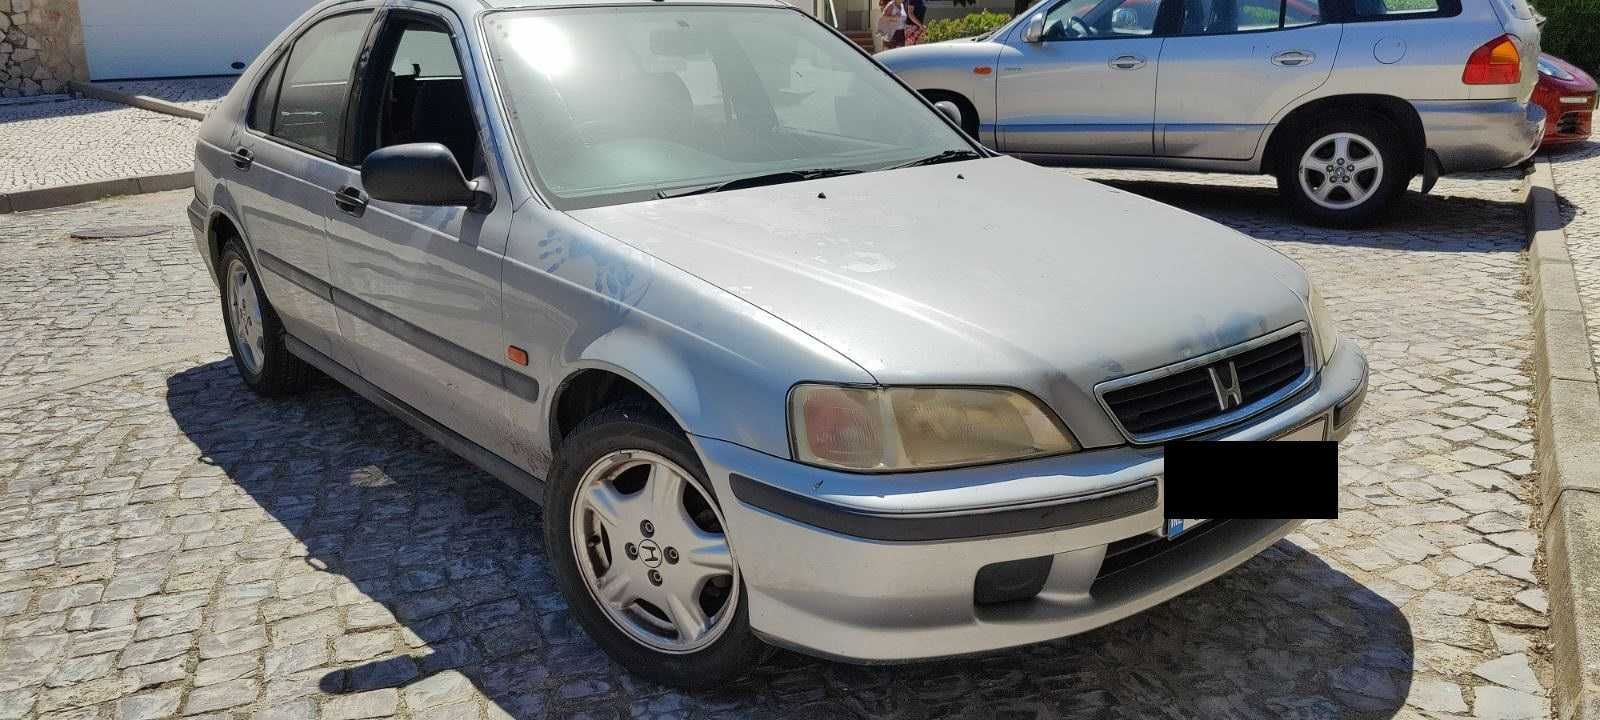 Honda Civic 1.5i 1998 Para Peças